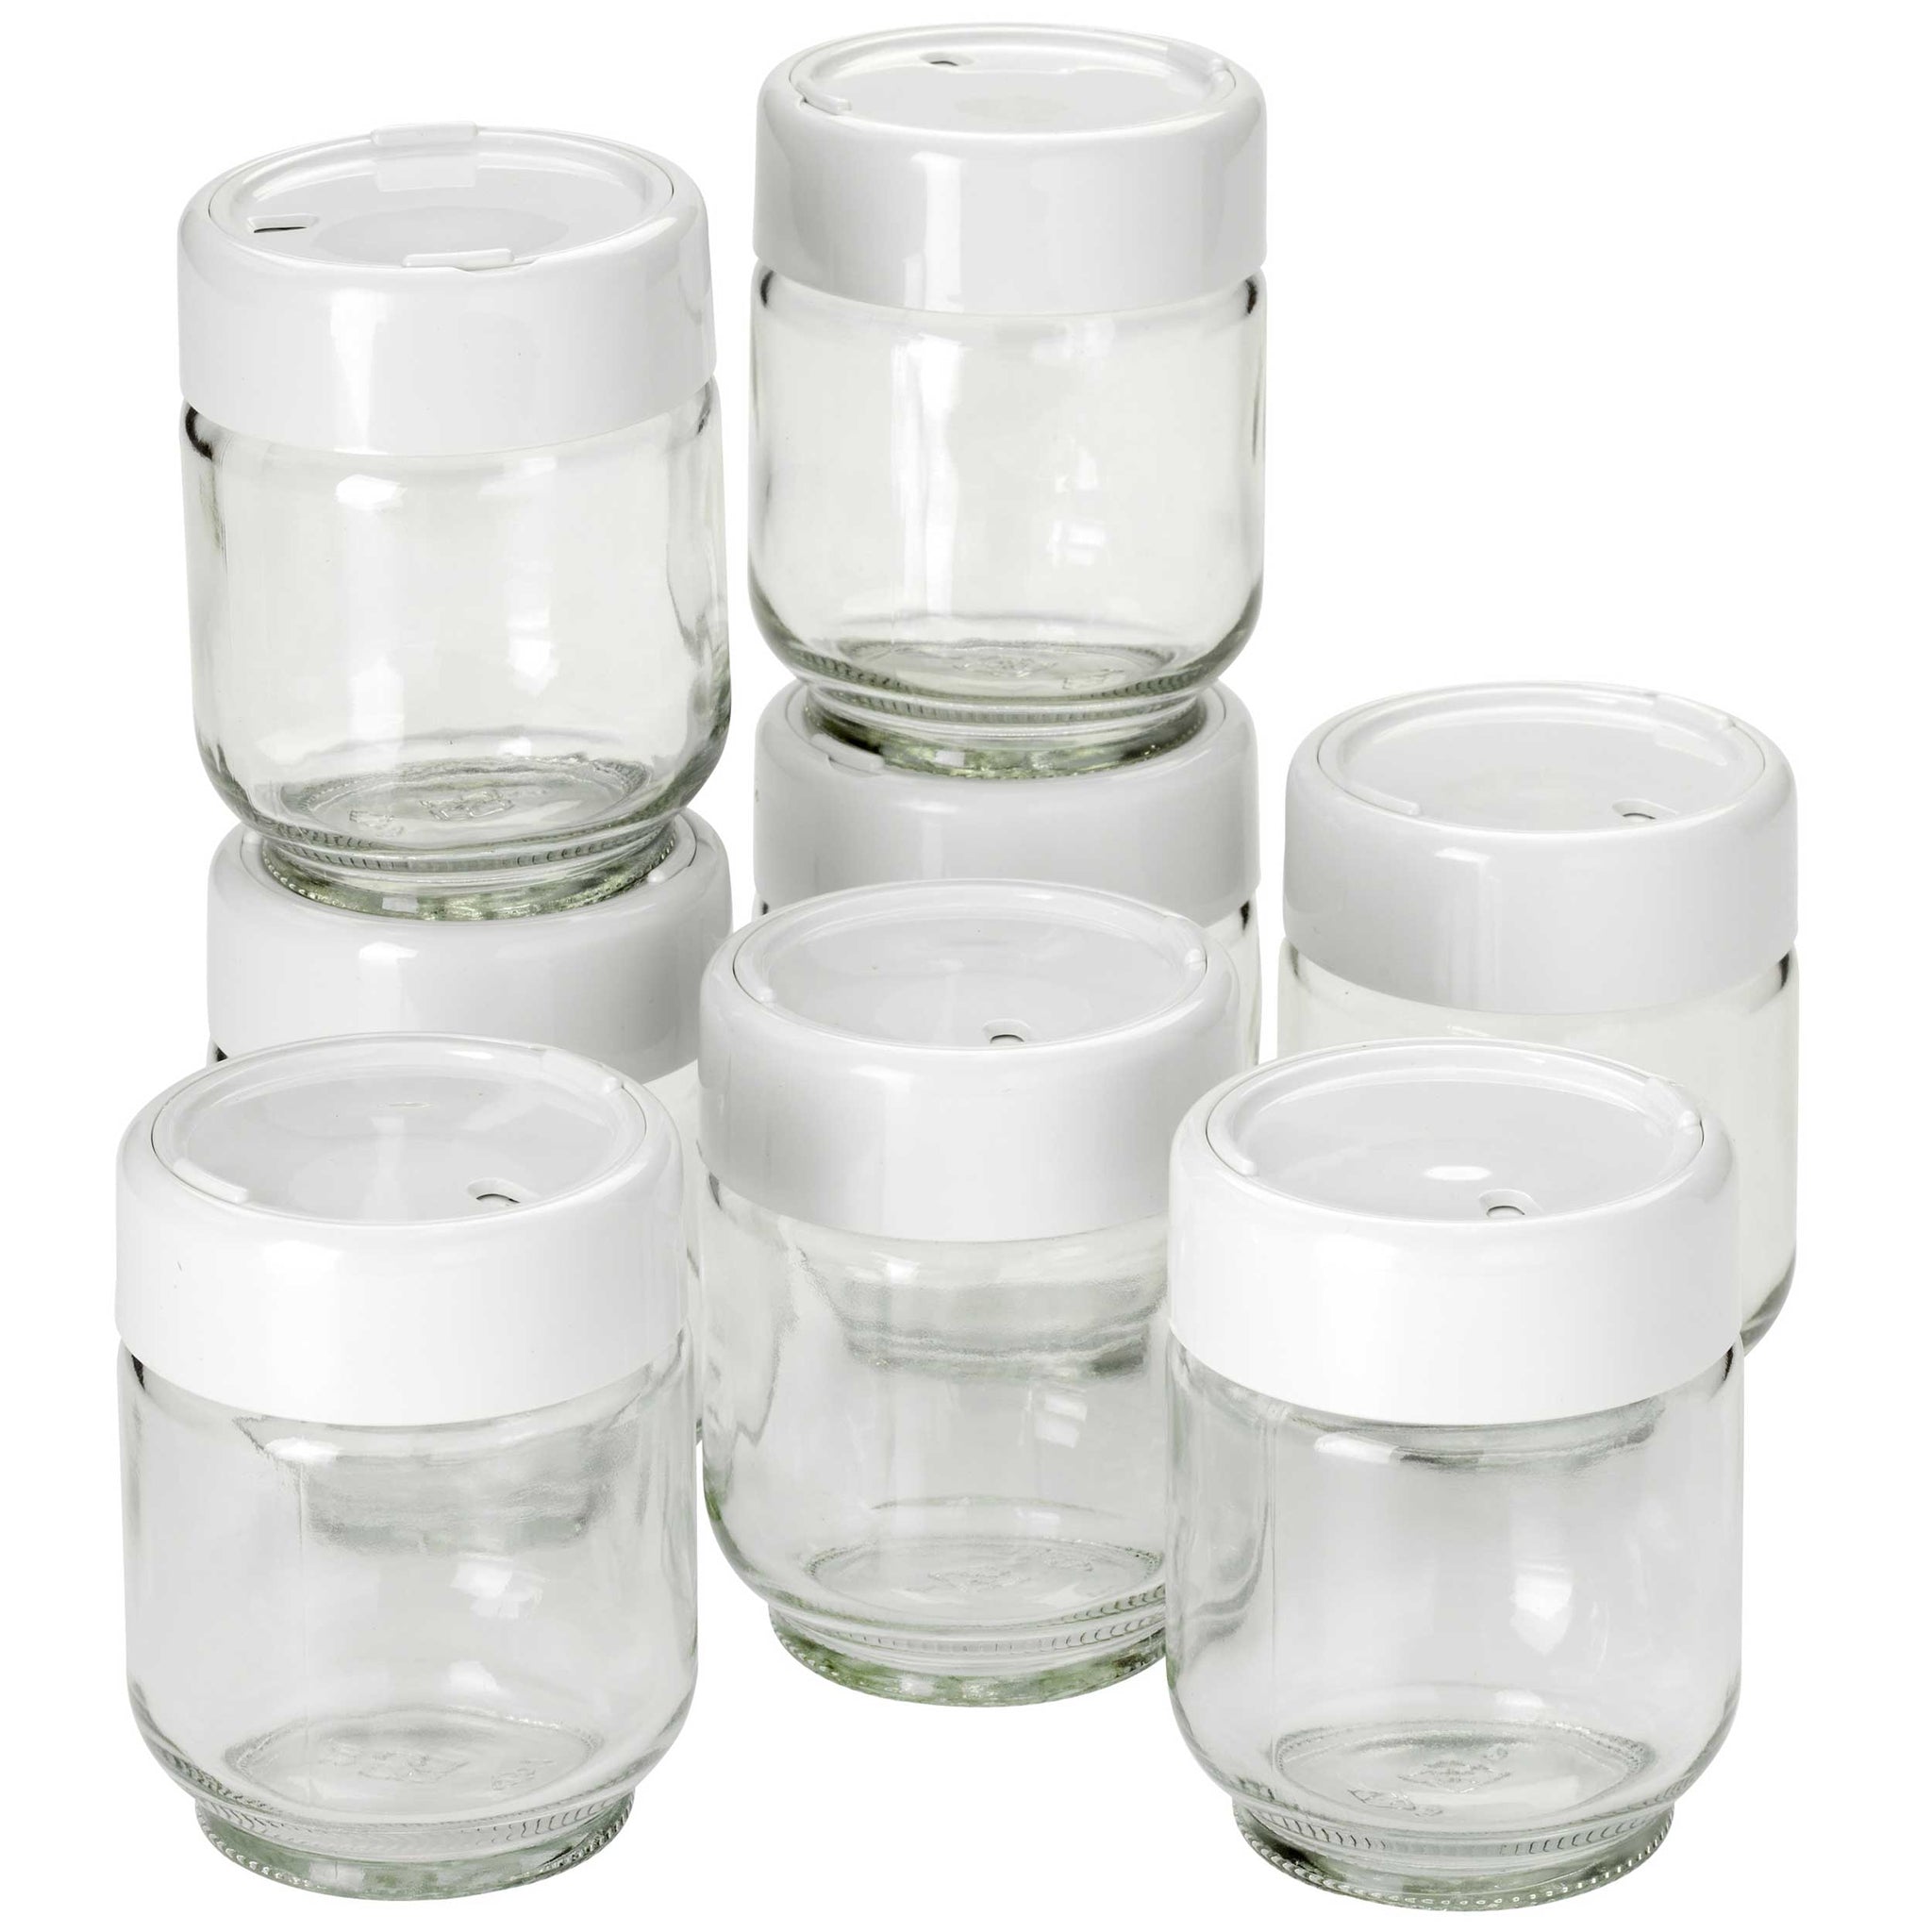 Glass Jars for Yogurt Maker